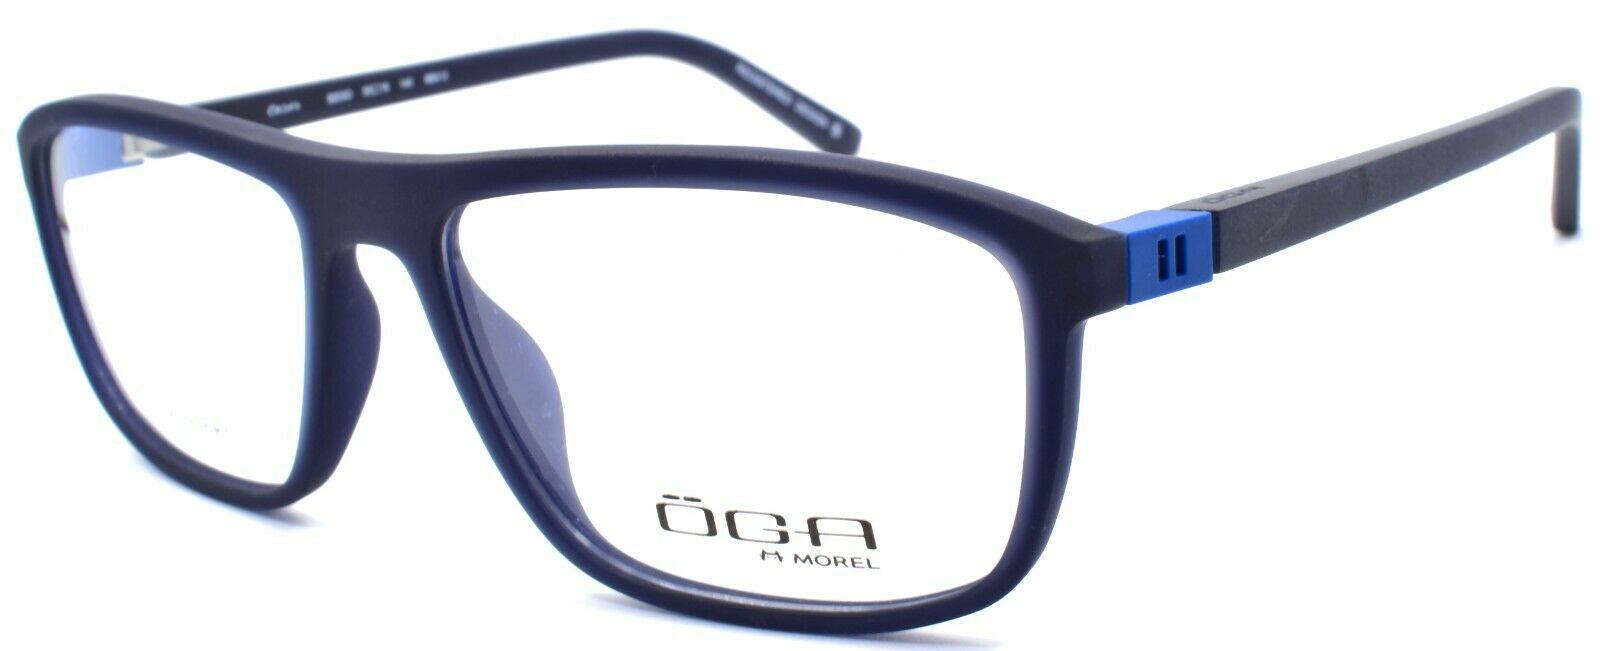 1-OGA by Morel 8203O BB012 Men's Eyeglasses Frames 55-16-140 Navy Blue-3604770897647-IKSpecs